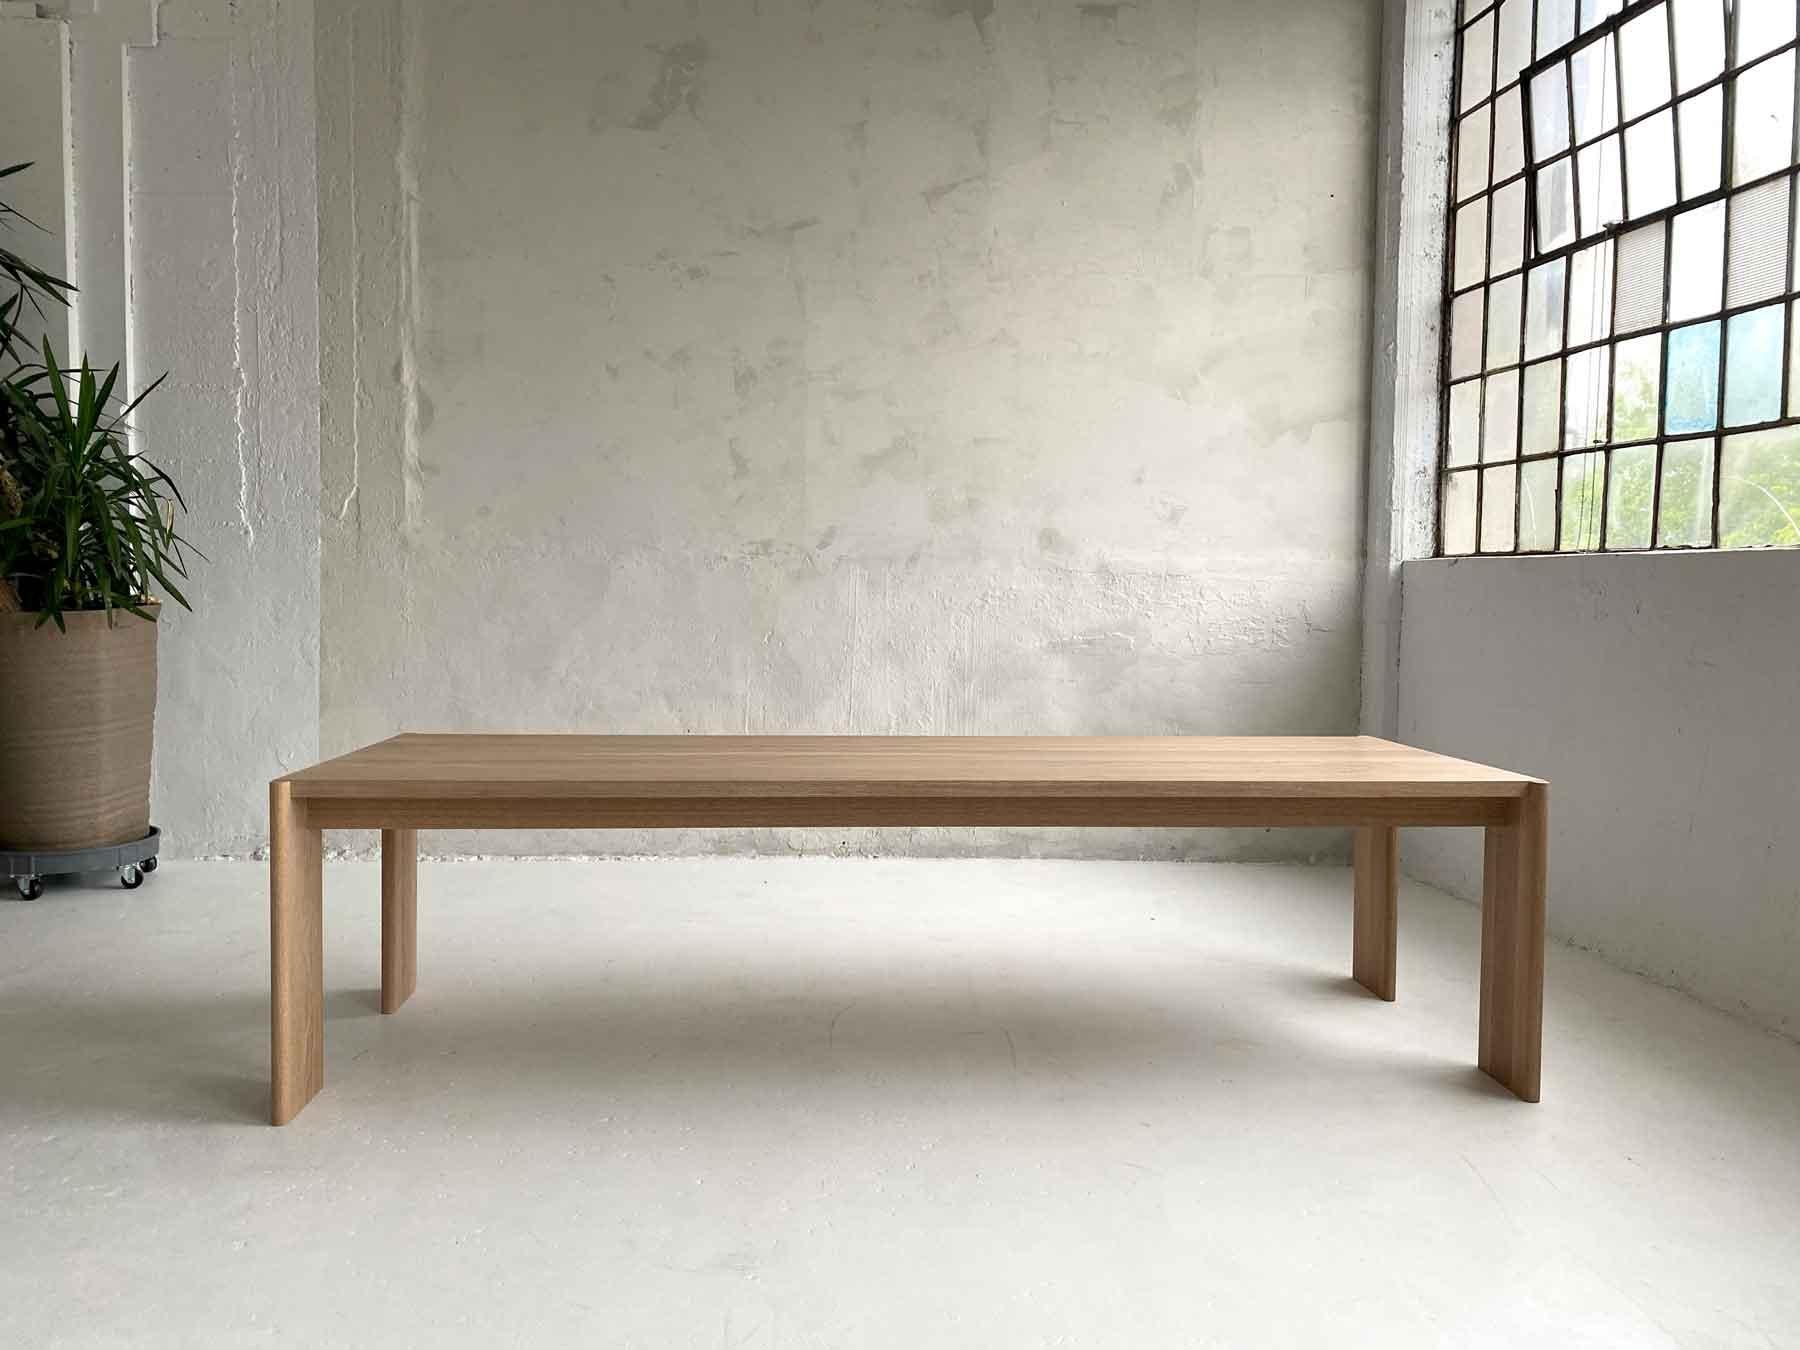 Inspirée par le luxe décontracté, notre table Curtis frappe par sa simplicité, une beauté humble. Des lignes épurées et des détails bien pensés font de cette pièce un objet à la fois solide et doux, beau et élégant.

Nous travaillons avec des bois